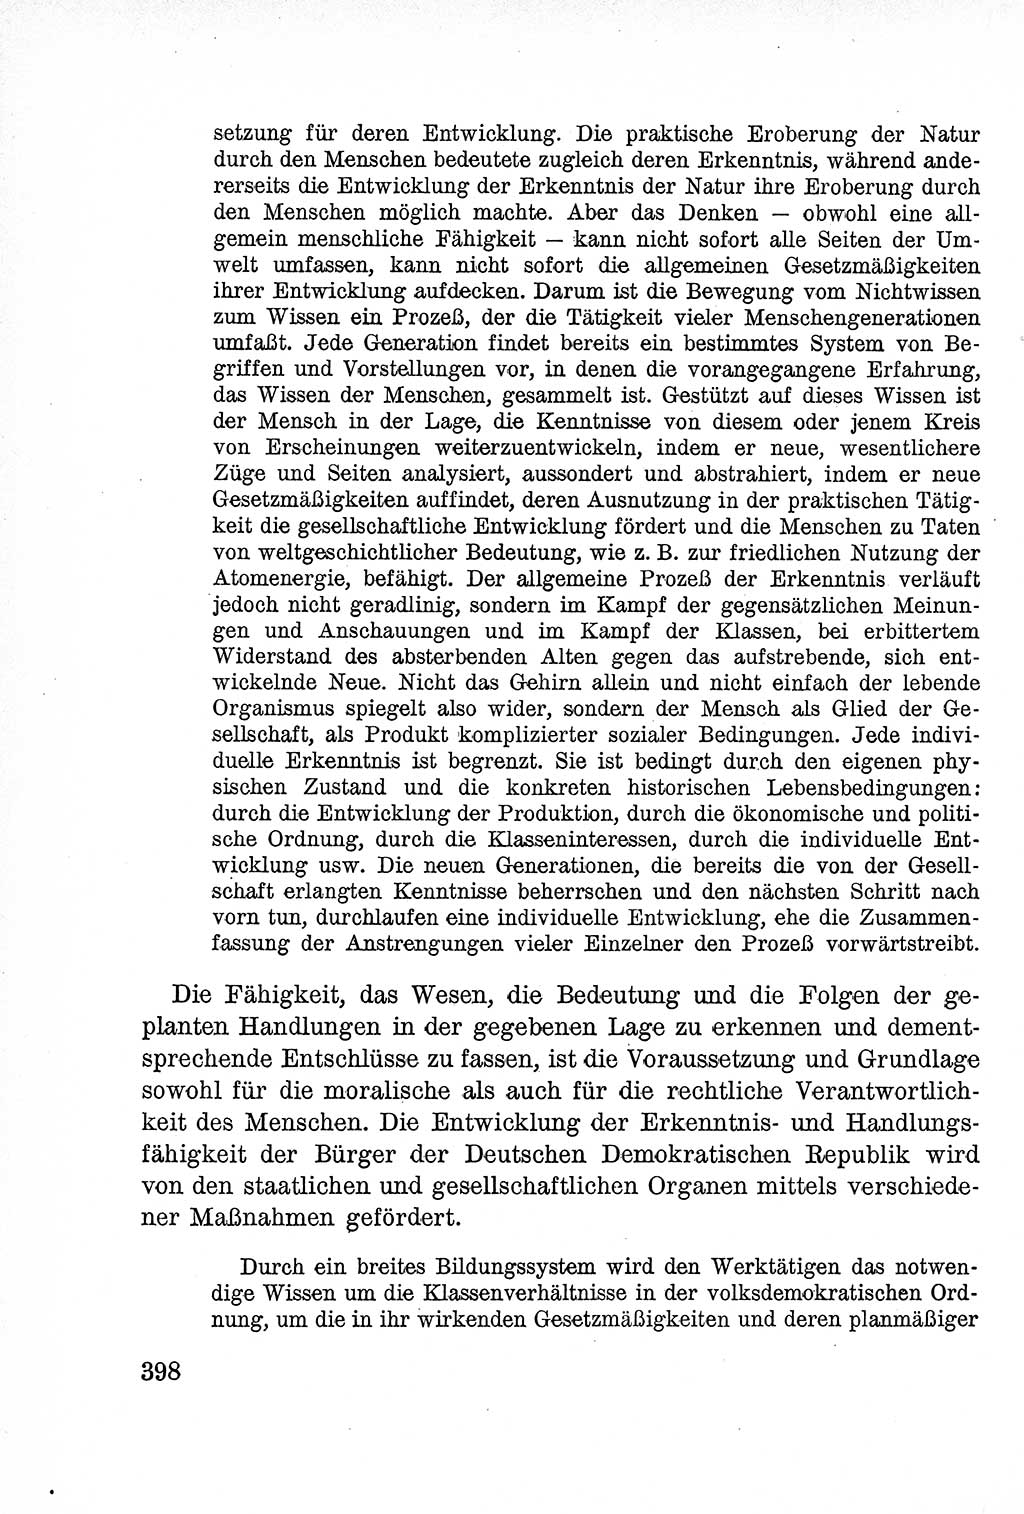 Lehrbuch des Strafrechts der Deutschen Demokratischen Republik (DDR), Allgemeiner Teil 1957, Seite 398 (Lb. Strafr. DDR AT 1957, S. 398)